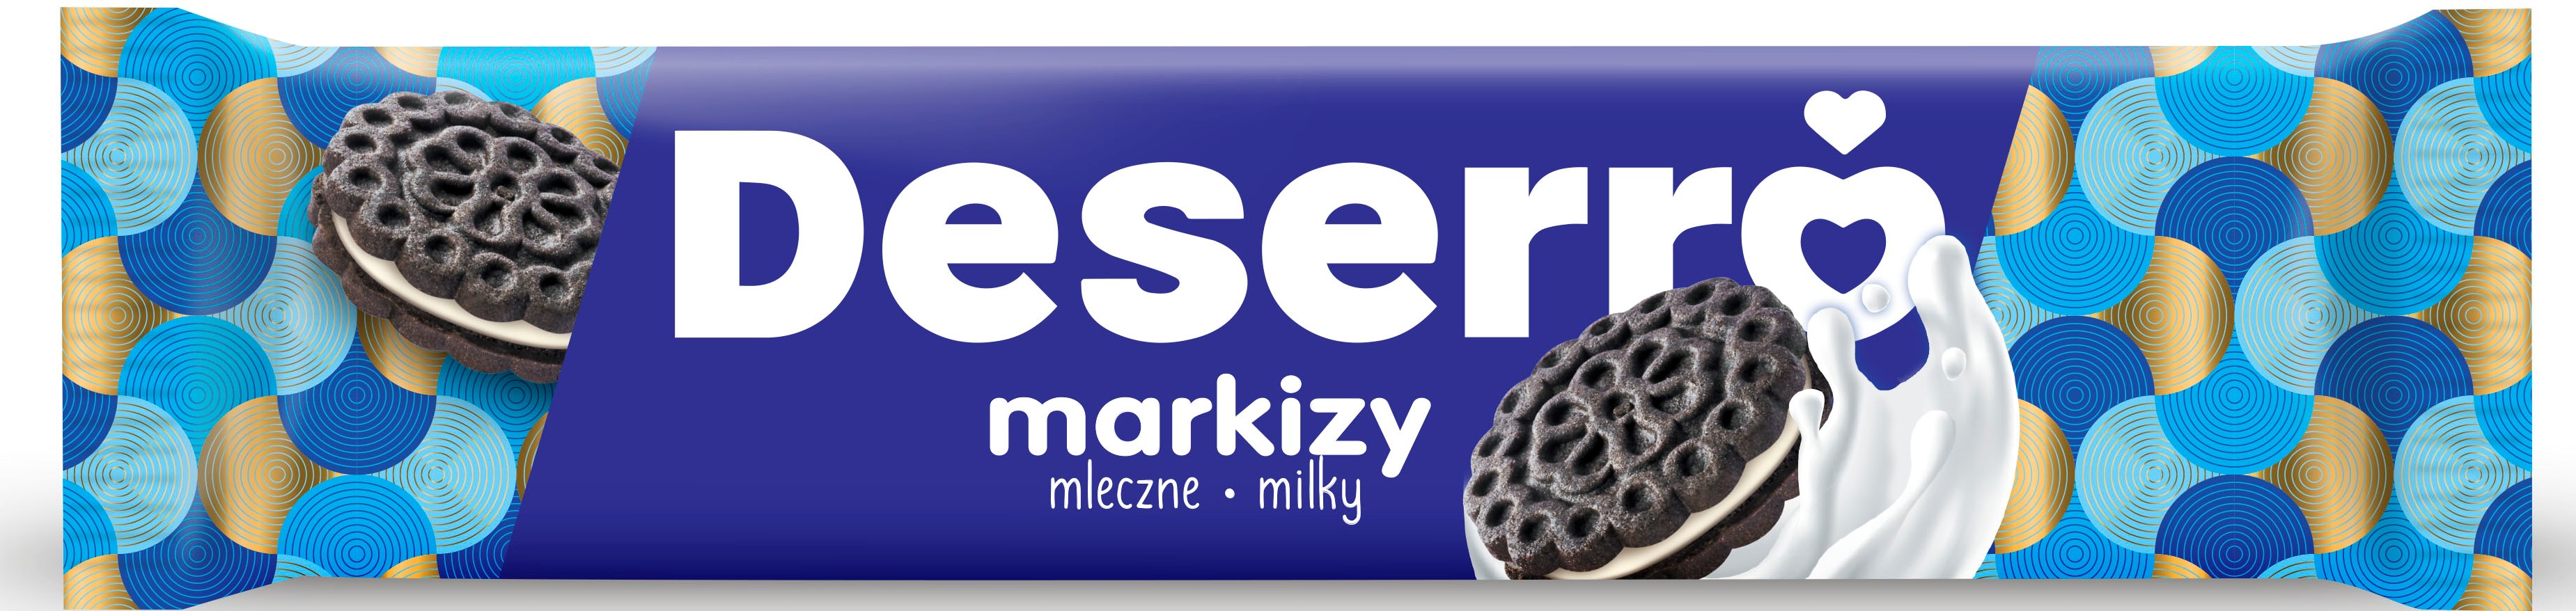 Cukry Nyskie Deserro markizy  mleczne